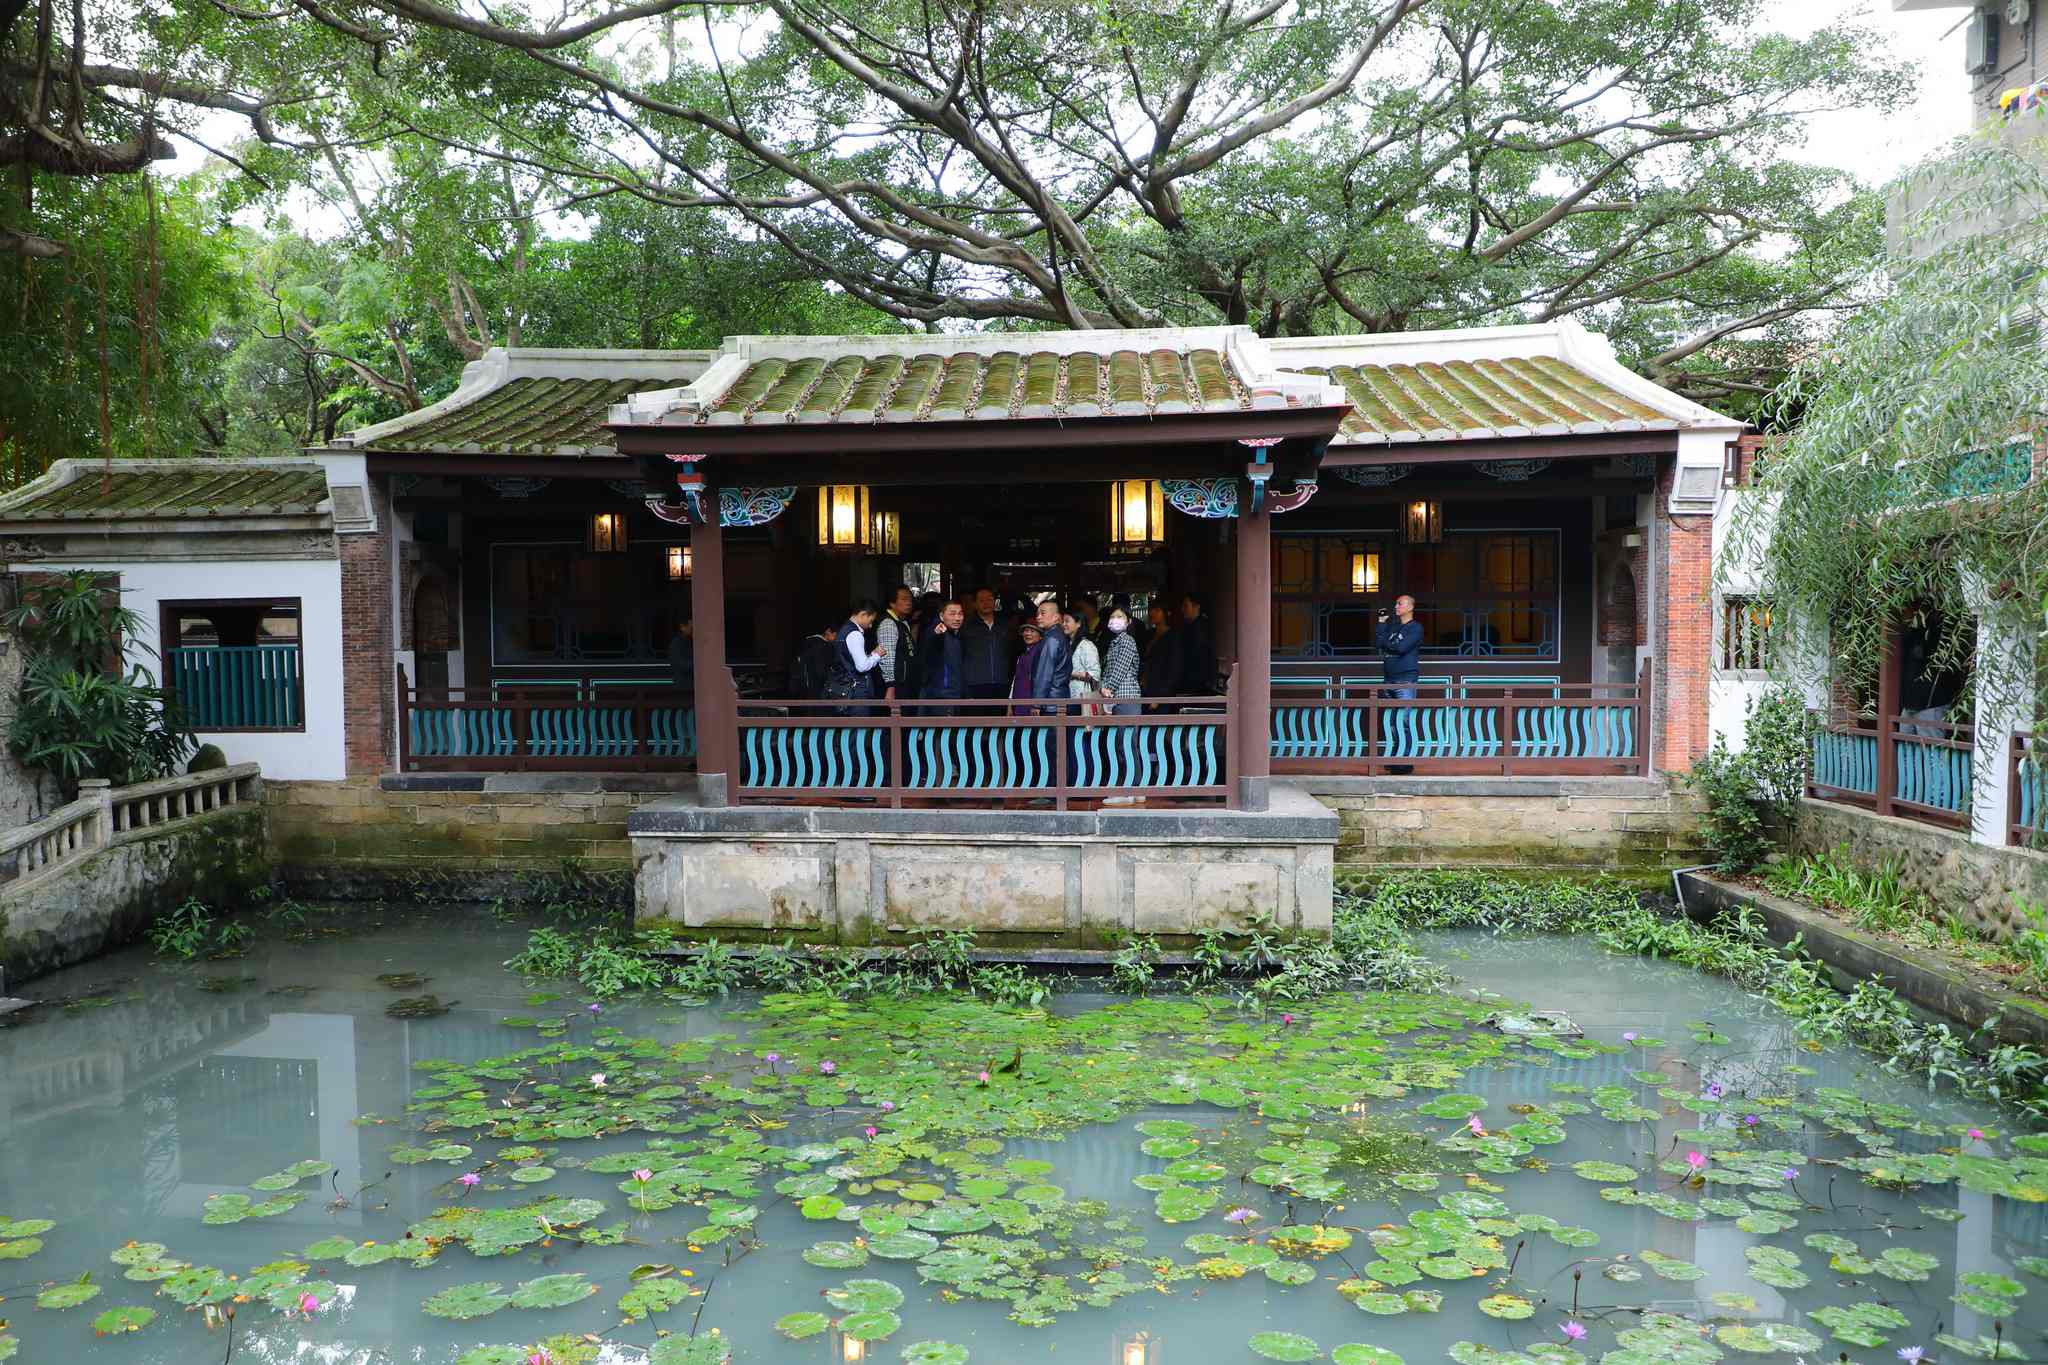 國定古蹟林本源園邸為目前台灣僅存最完整園林建築，擁有精緻雕刻及特色建築裝飾